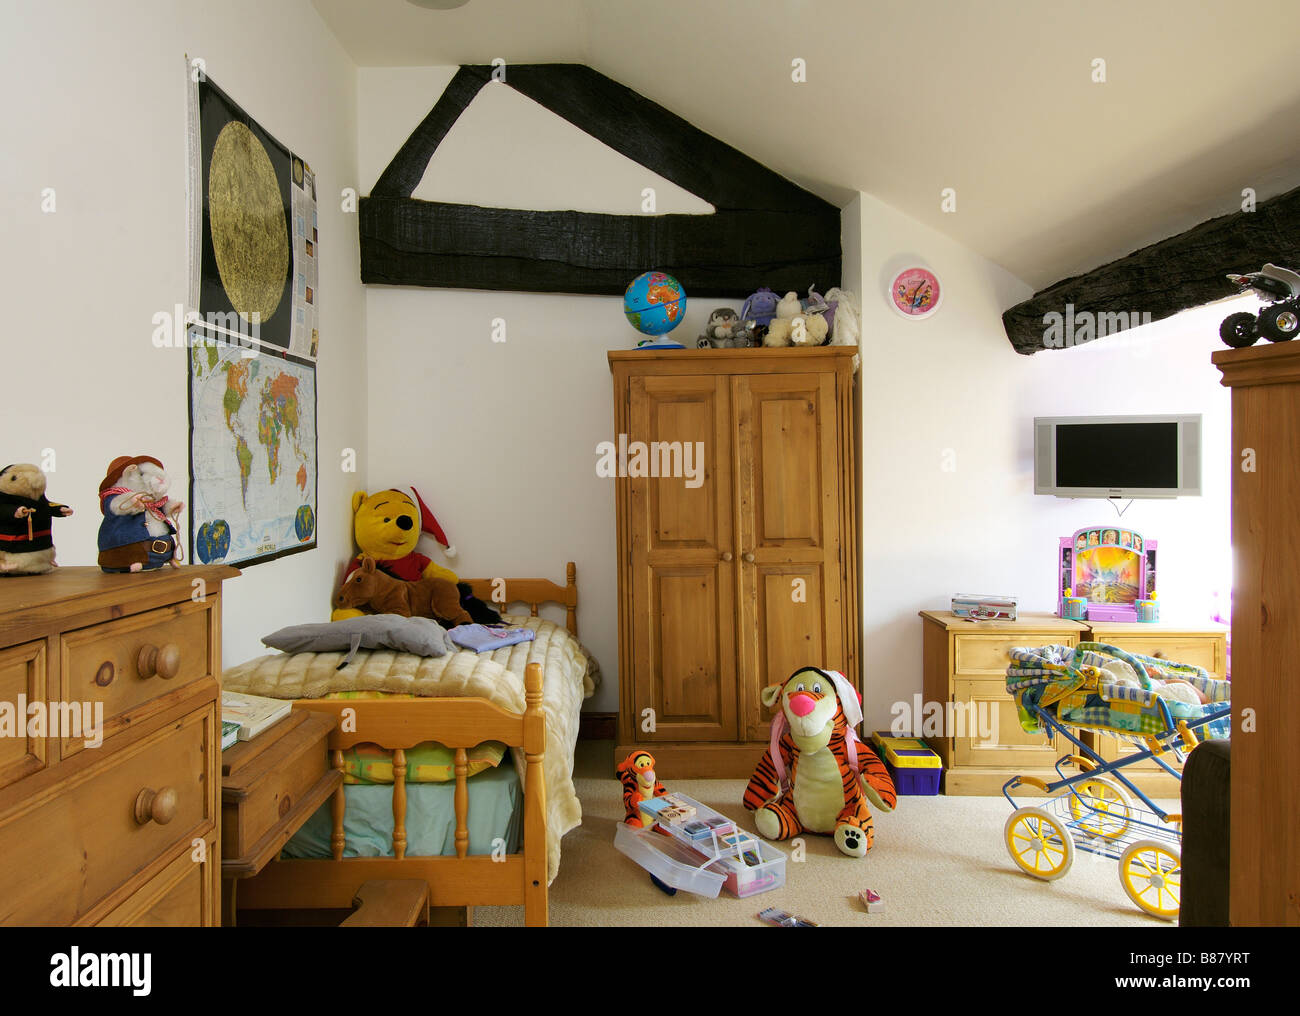 Bambini La camera da letto con mobili in legno e giocattoli Foto Stock